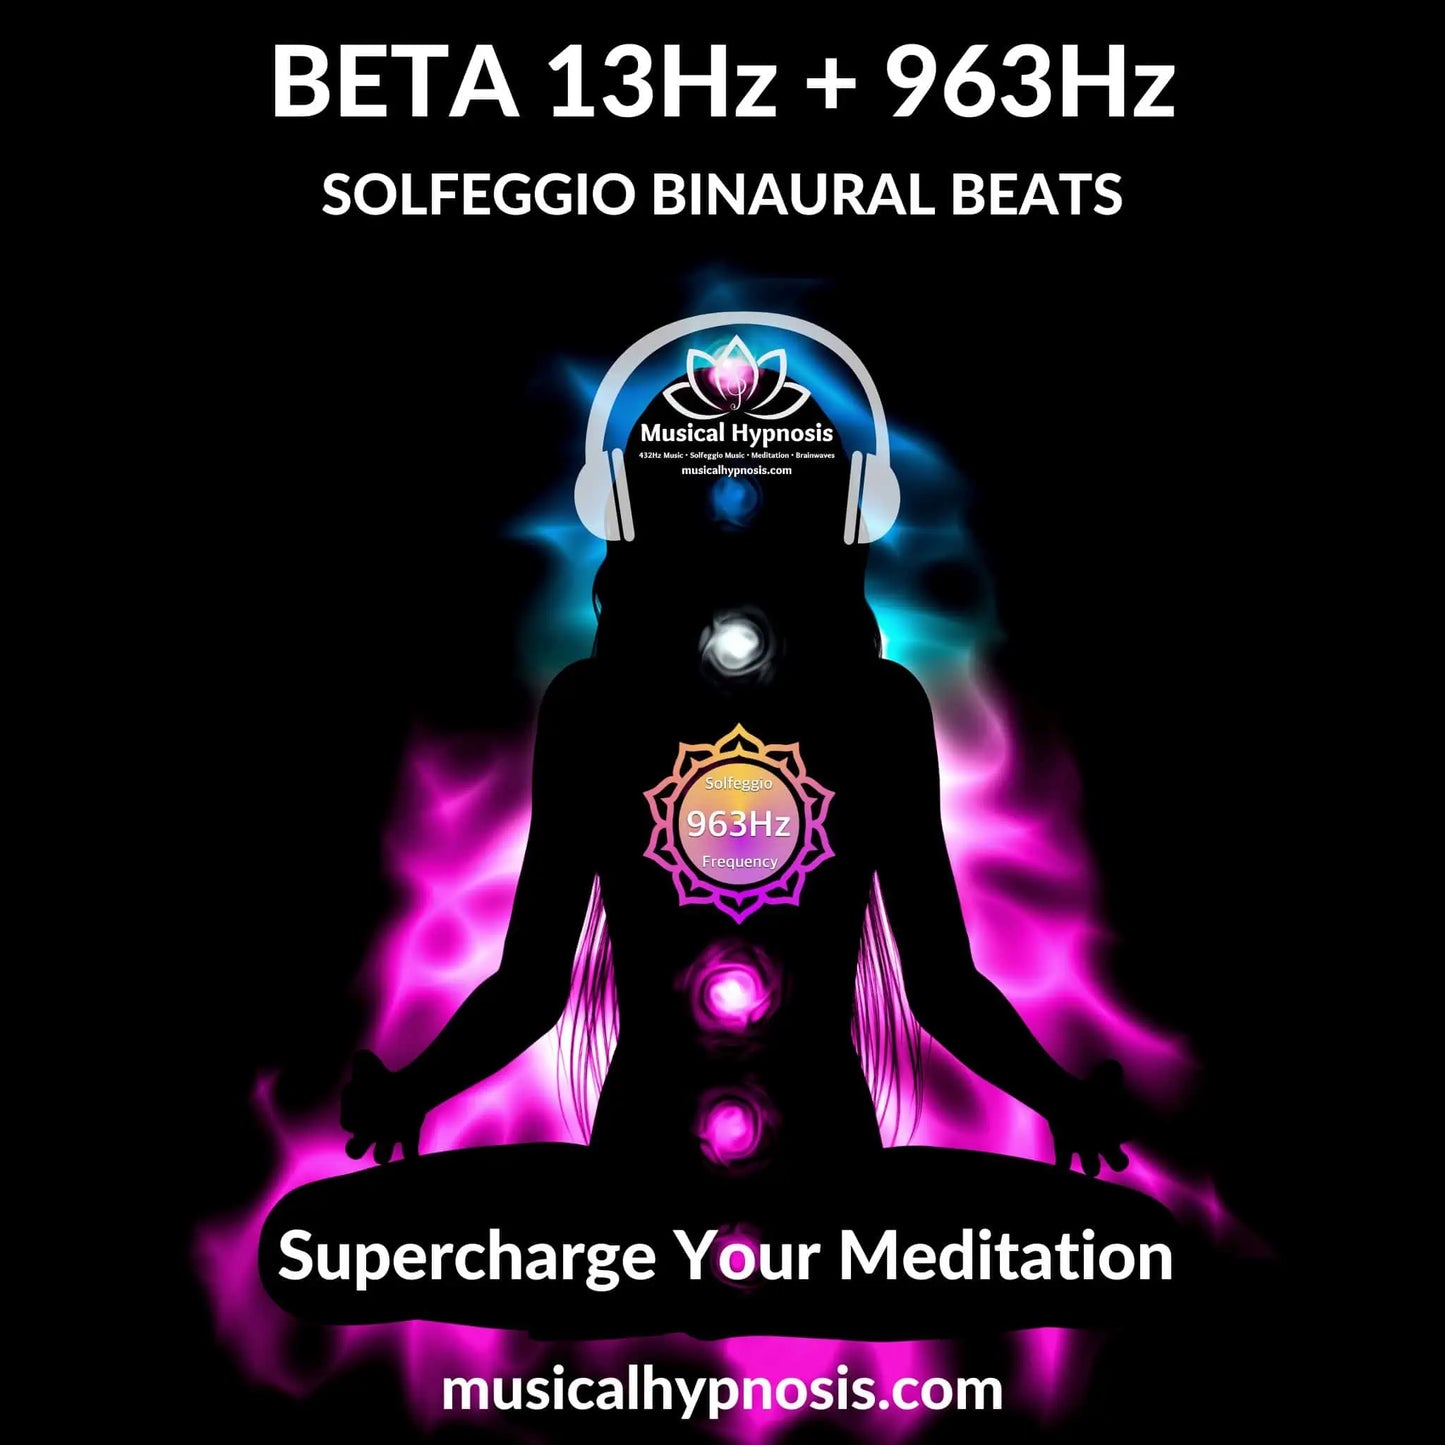 Beta 13Hz and 963Hz Solfeggio Binaural Beats | 30 minutes